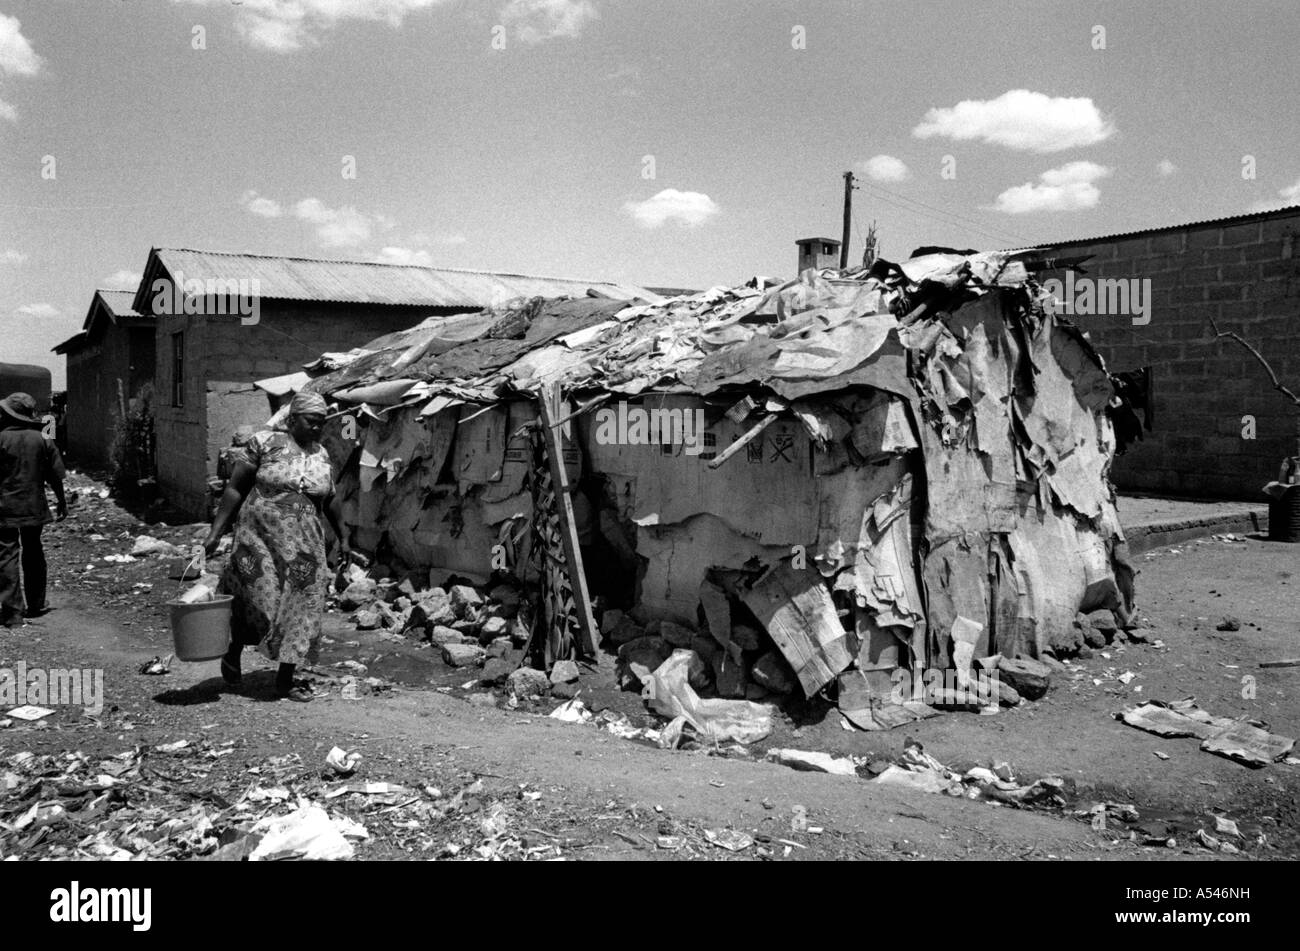 Painet HM1757 in bianco e nero di povertà dimora baraccopoli di Nairobi Kenya paese nazione in via di sviluppo meno sviluppati dal punto di vista economico Foto Stock